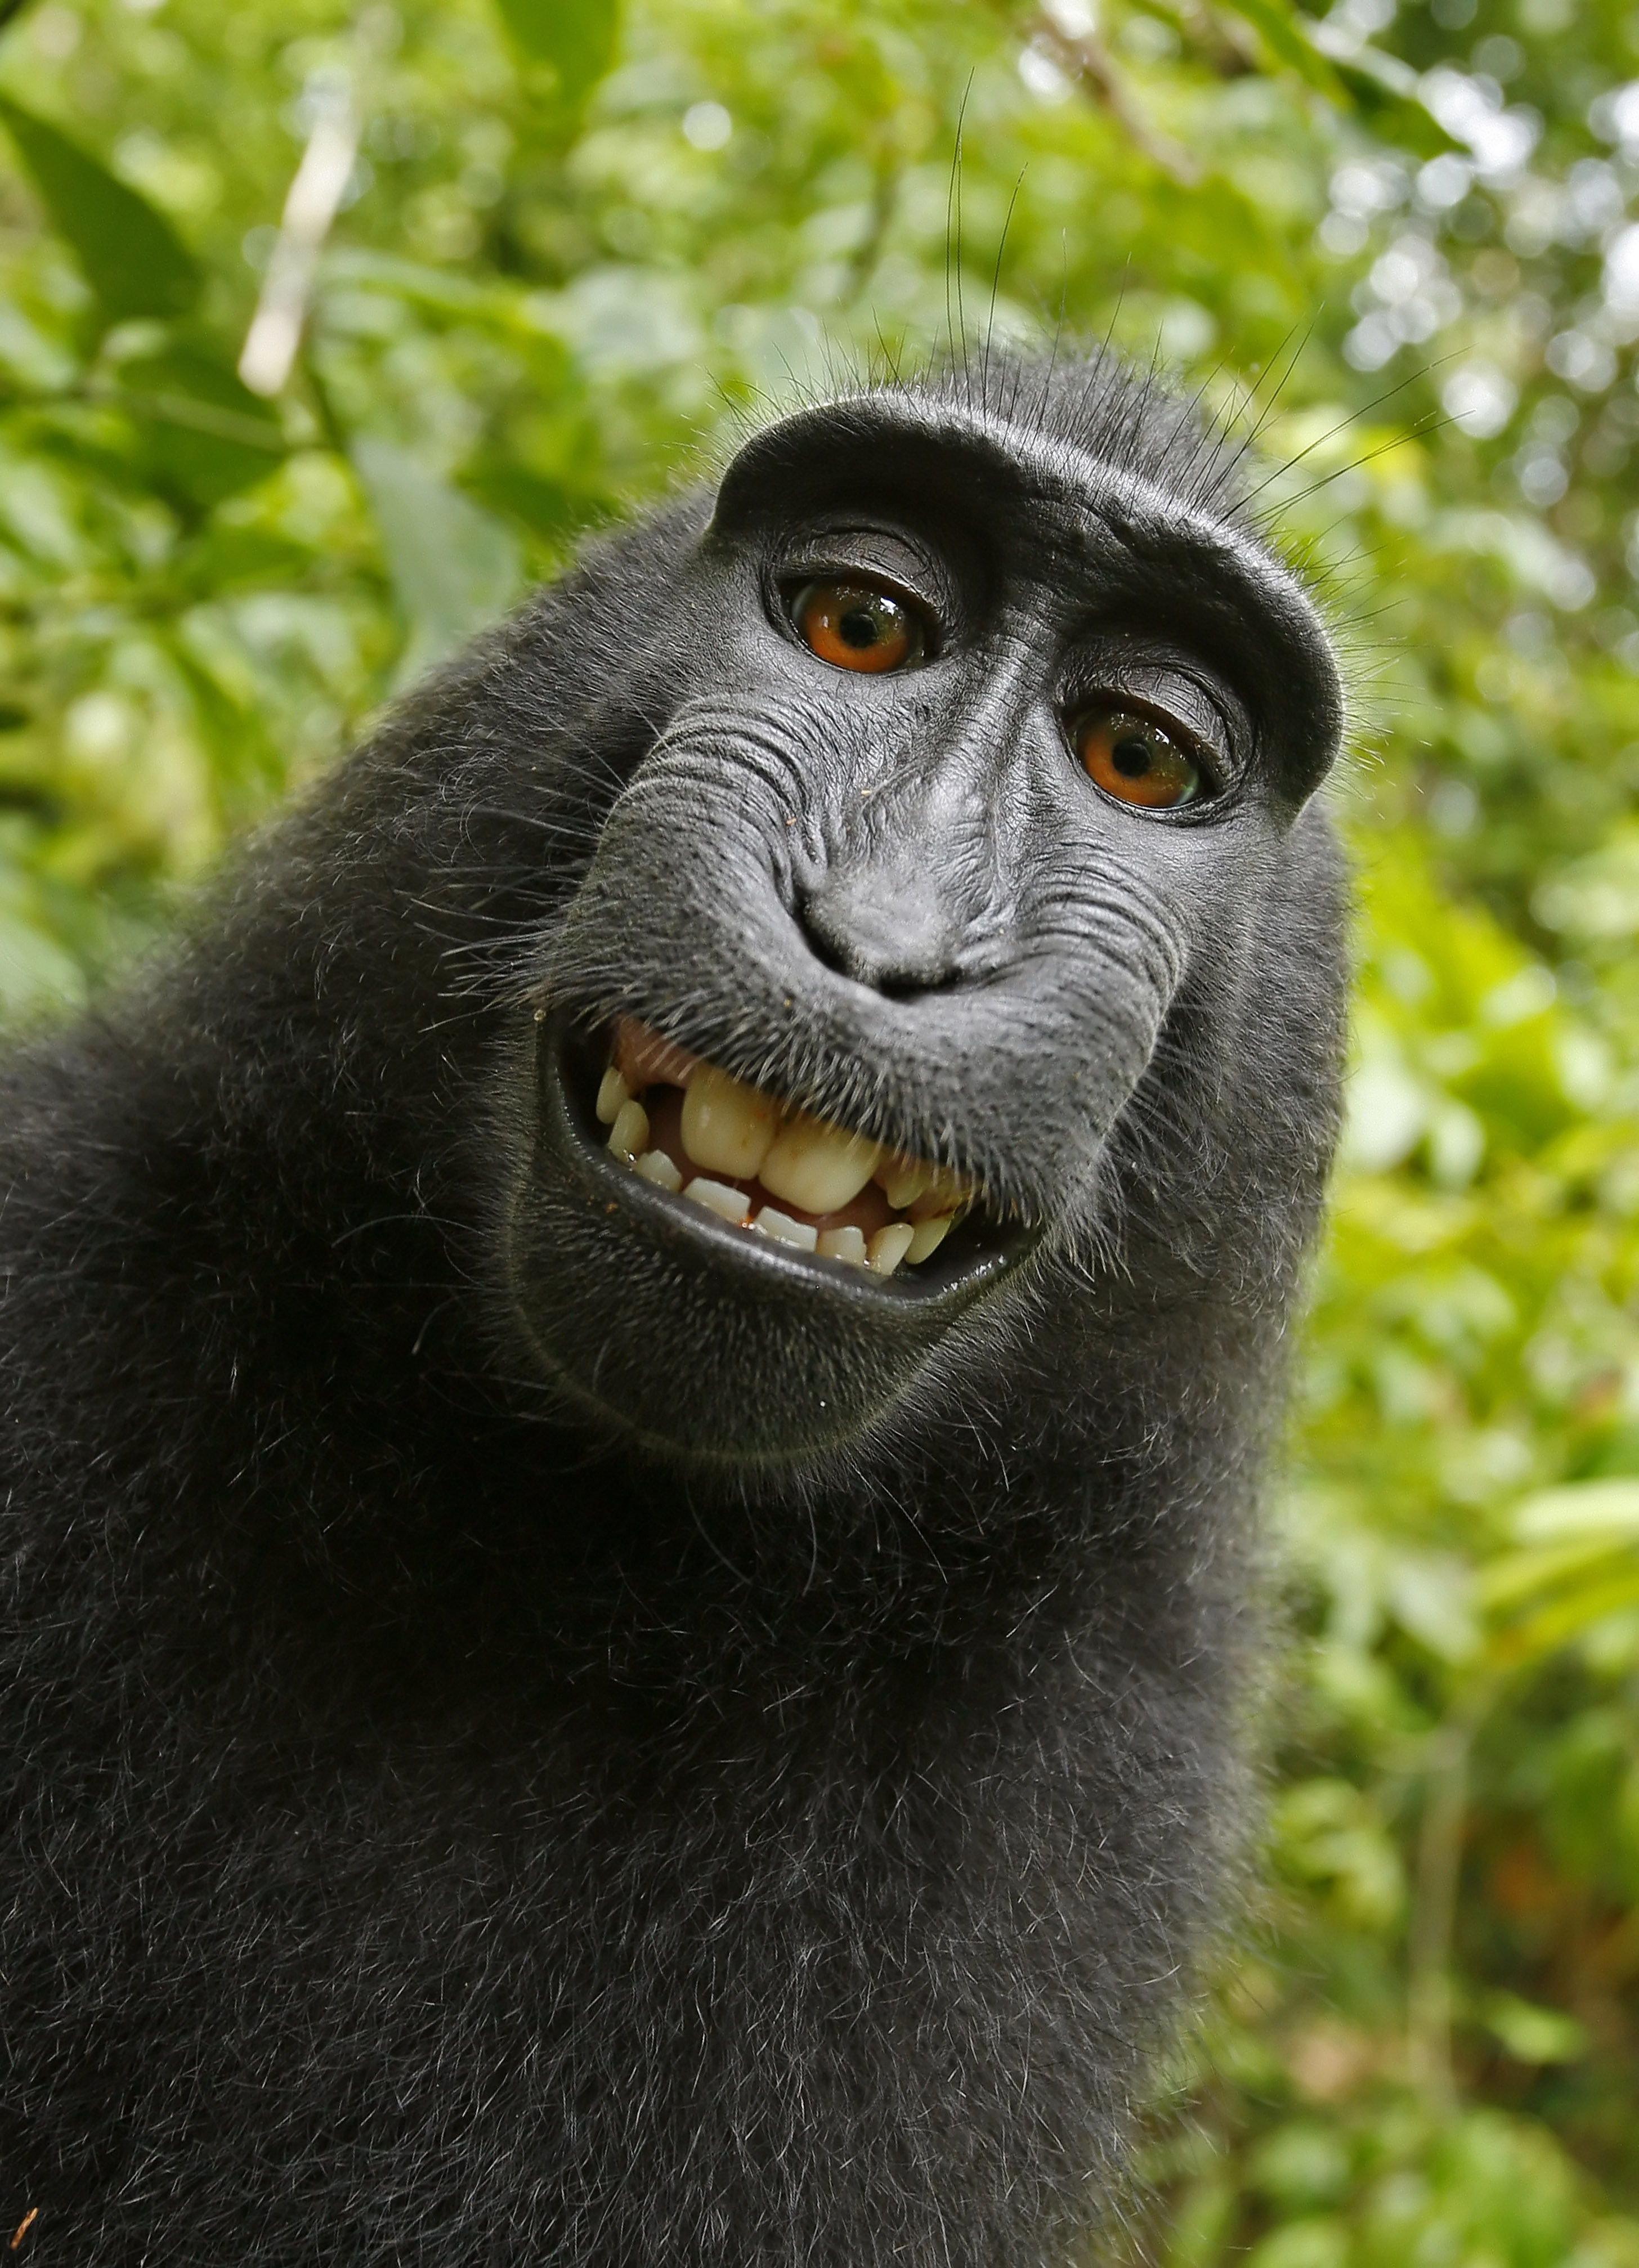 2011. aastal Indoneesias Sulawesi saarel varastas emane must makaak briti fotograafi David Slateri kaamera ja pildistas sellega ennast. Ahvi selfid läksid sotsiaalmeedias fotograafi nõusolekuta rändama, minnes talle väidetavalt maksma kümneid tuhandeid naelu. Kohus leidis, et kuna pildistamisnupule vajutas makaak, kuulub ka piltide autoriõigus talle. Ahvi seisukoht antud küsimuses ei ole teada. 